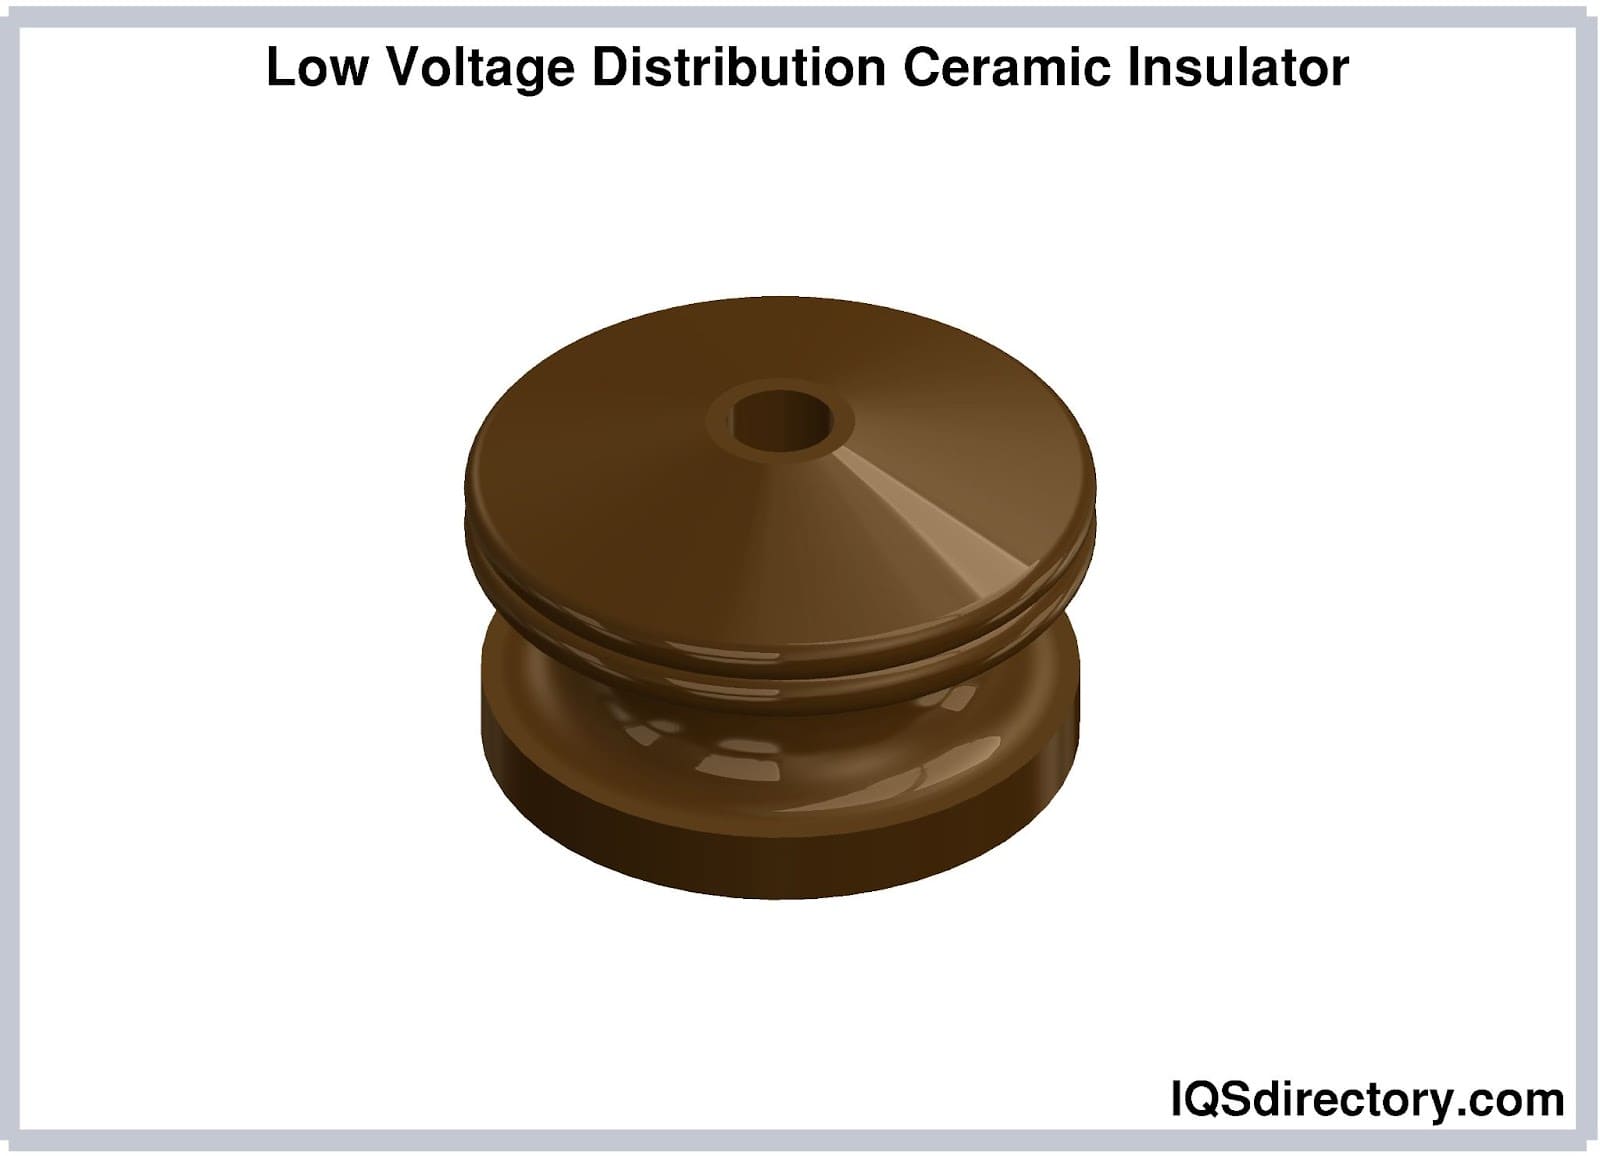 Low Voltage Distribution Ceramic Insulator